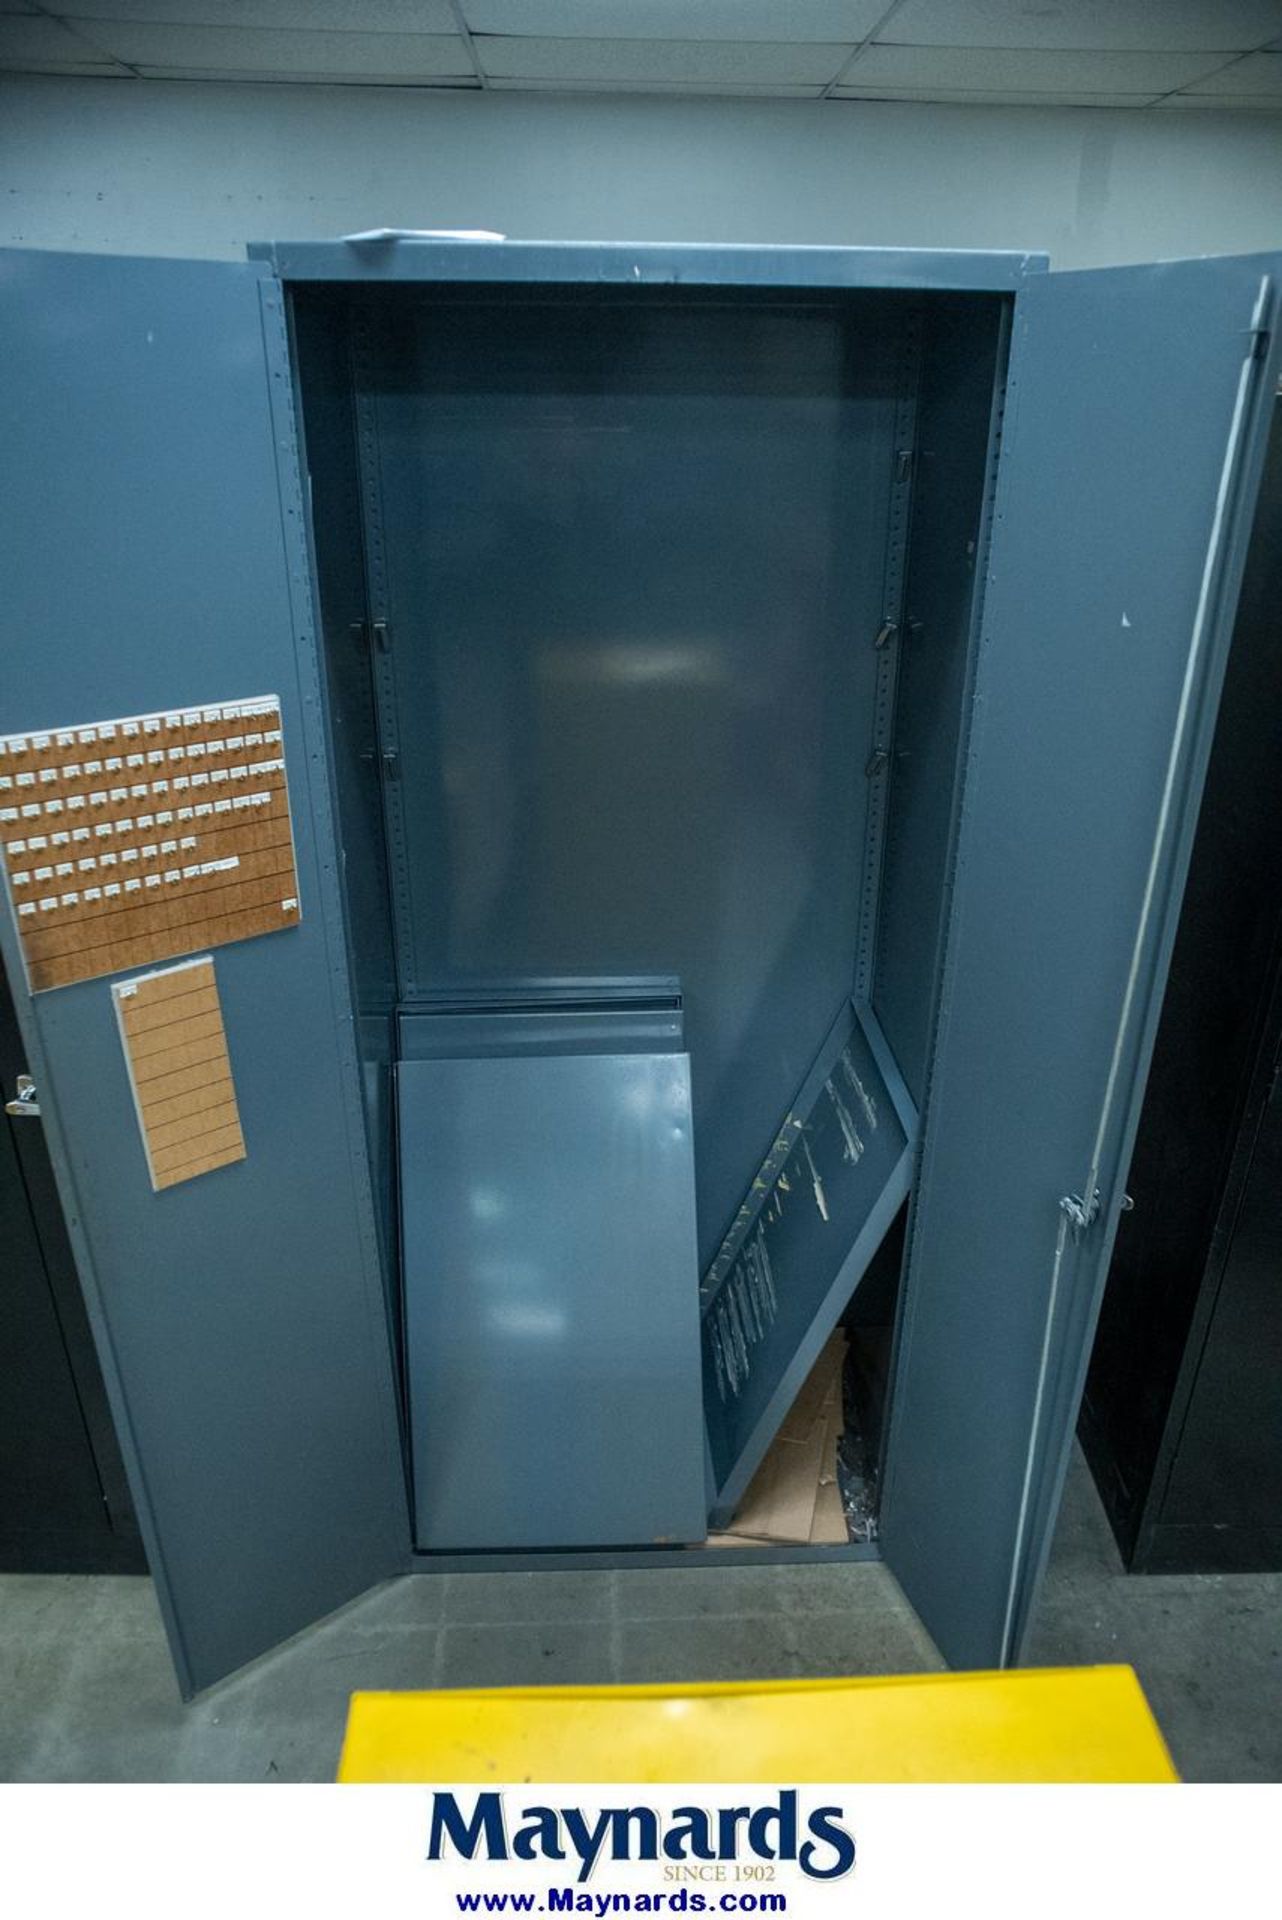 Durham Mfg. 2-Door Cabinet (3' W x 2' D x 7' H) - Image 2 of 2